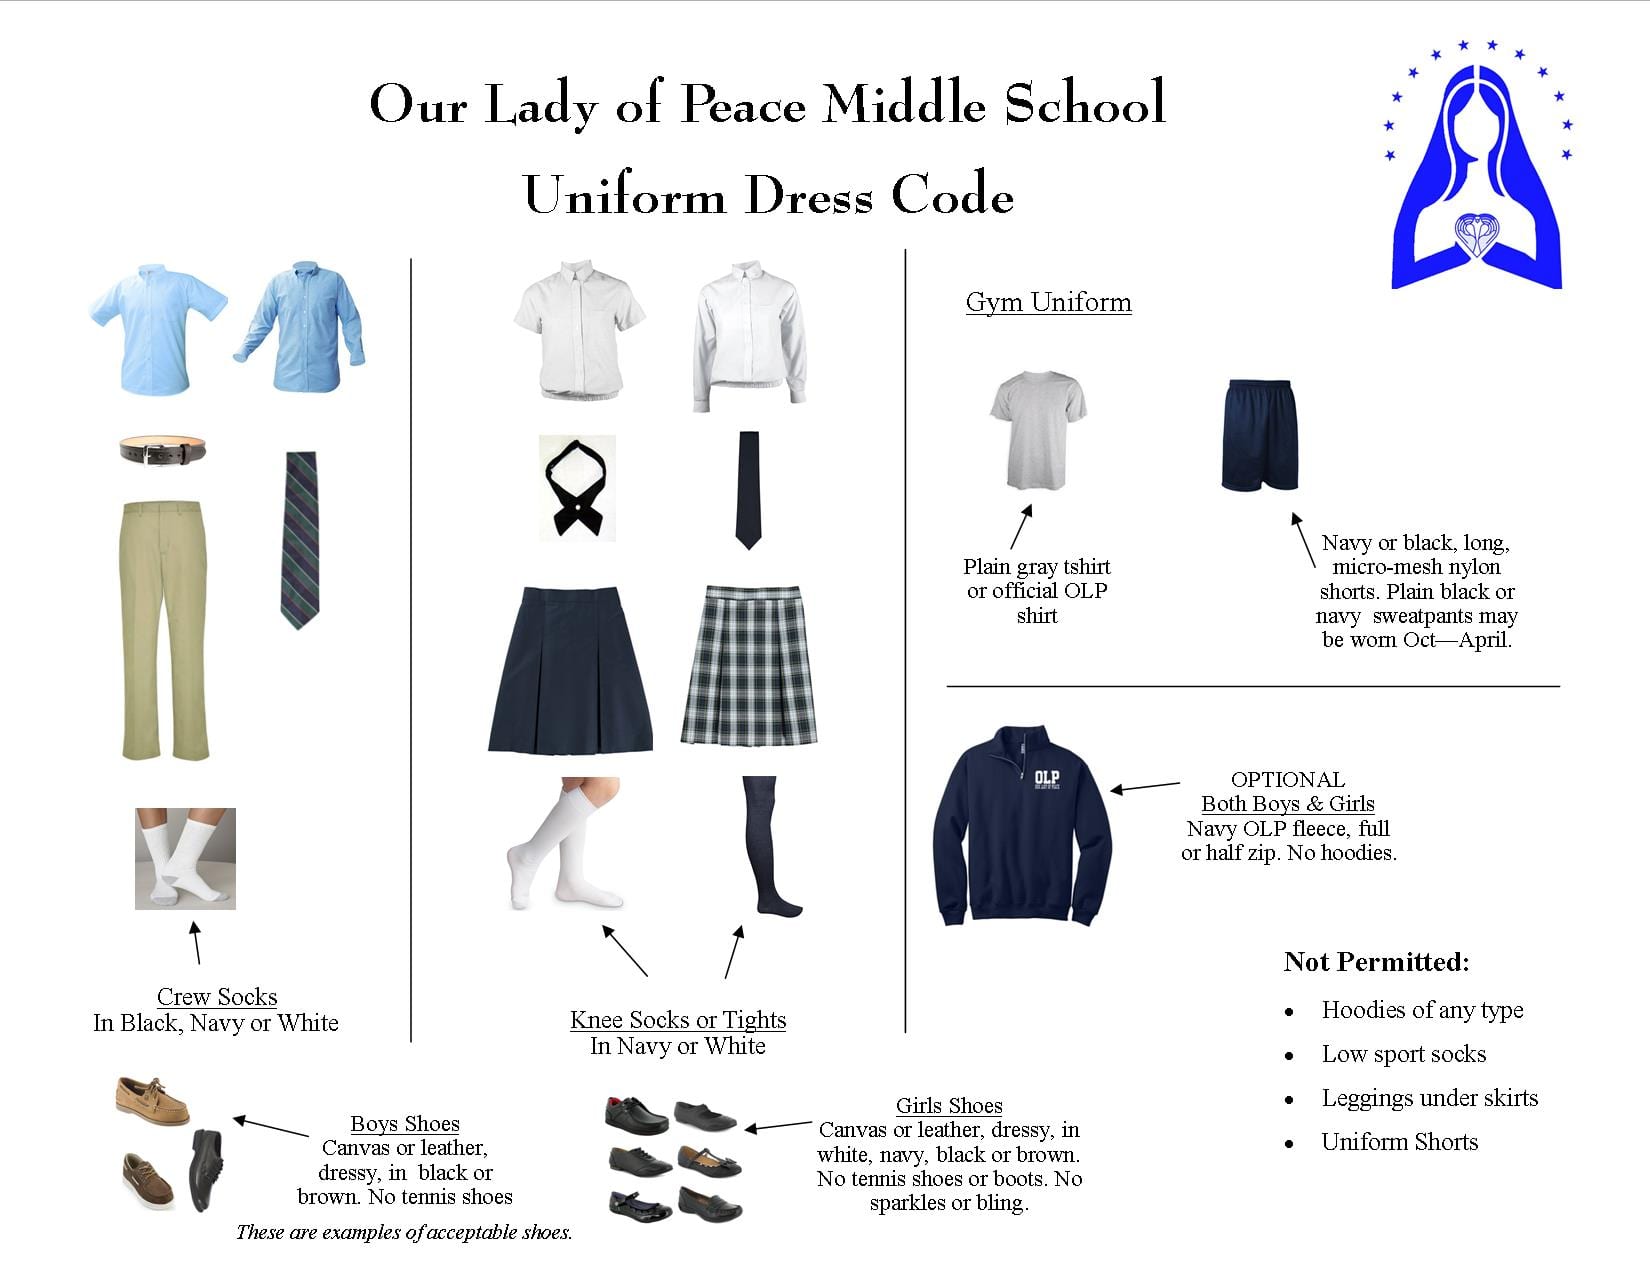 https://olpschool.org/wp-content/uploads/sites/23/2015/02/School-Uniform-Requirements-6-8.jpg